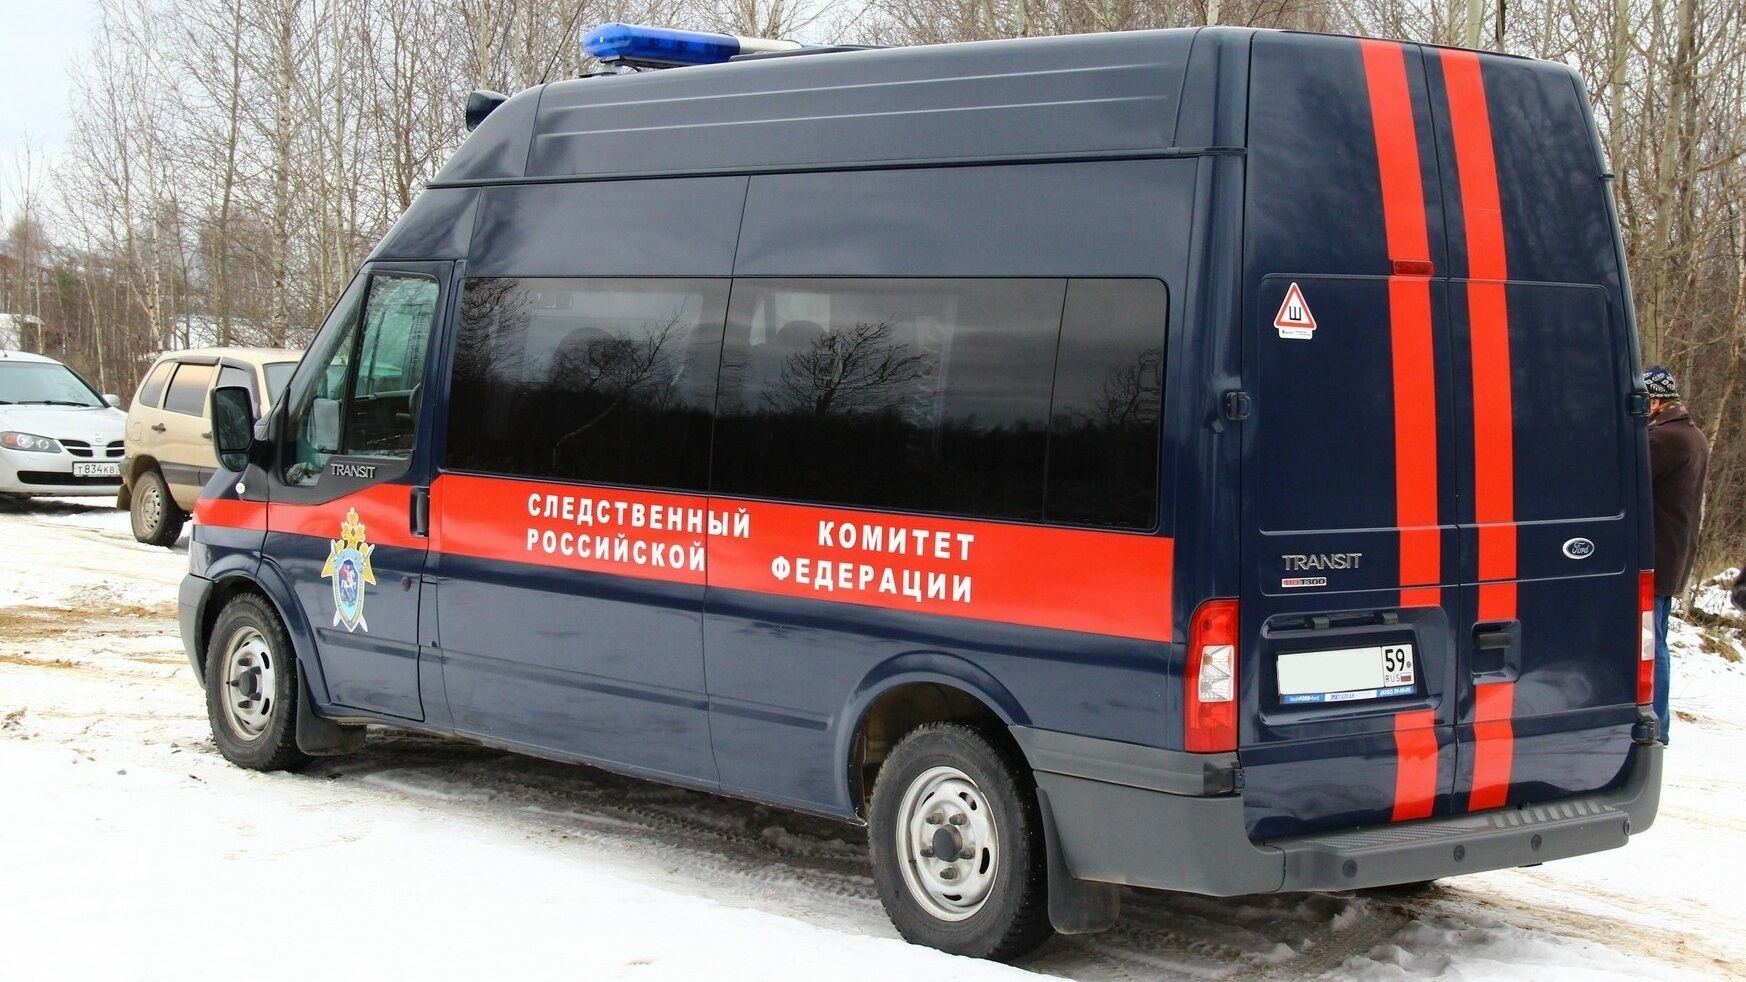 В Пермском крае возле школы нашли тело пятиклассника. СК проводит проверку